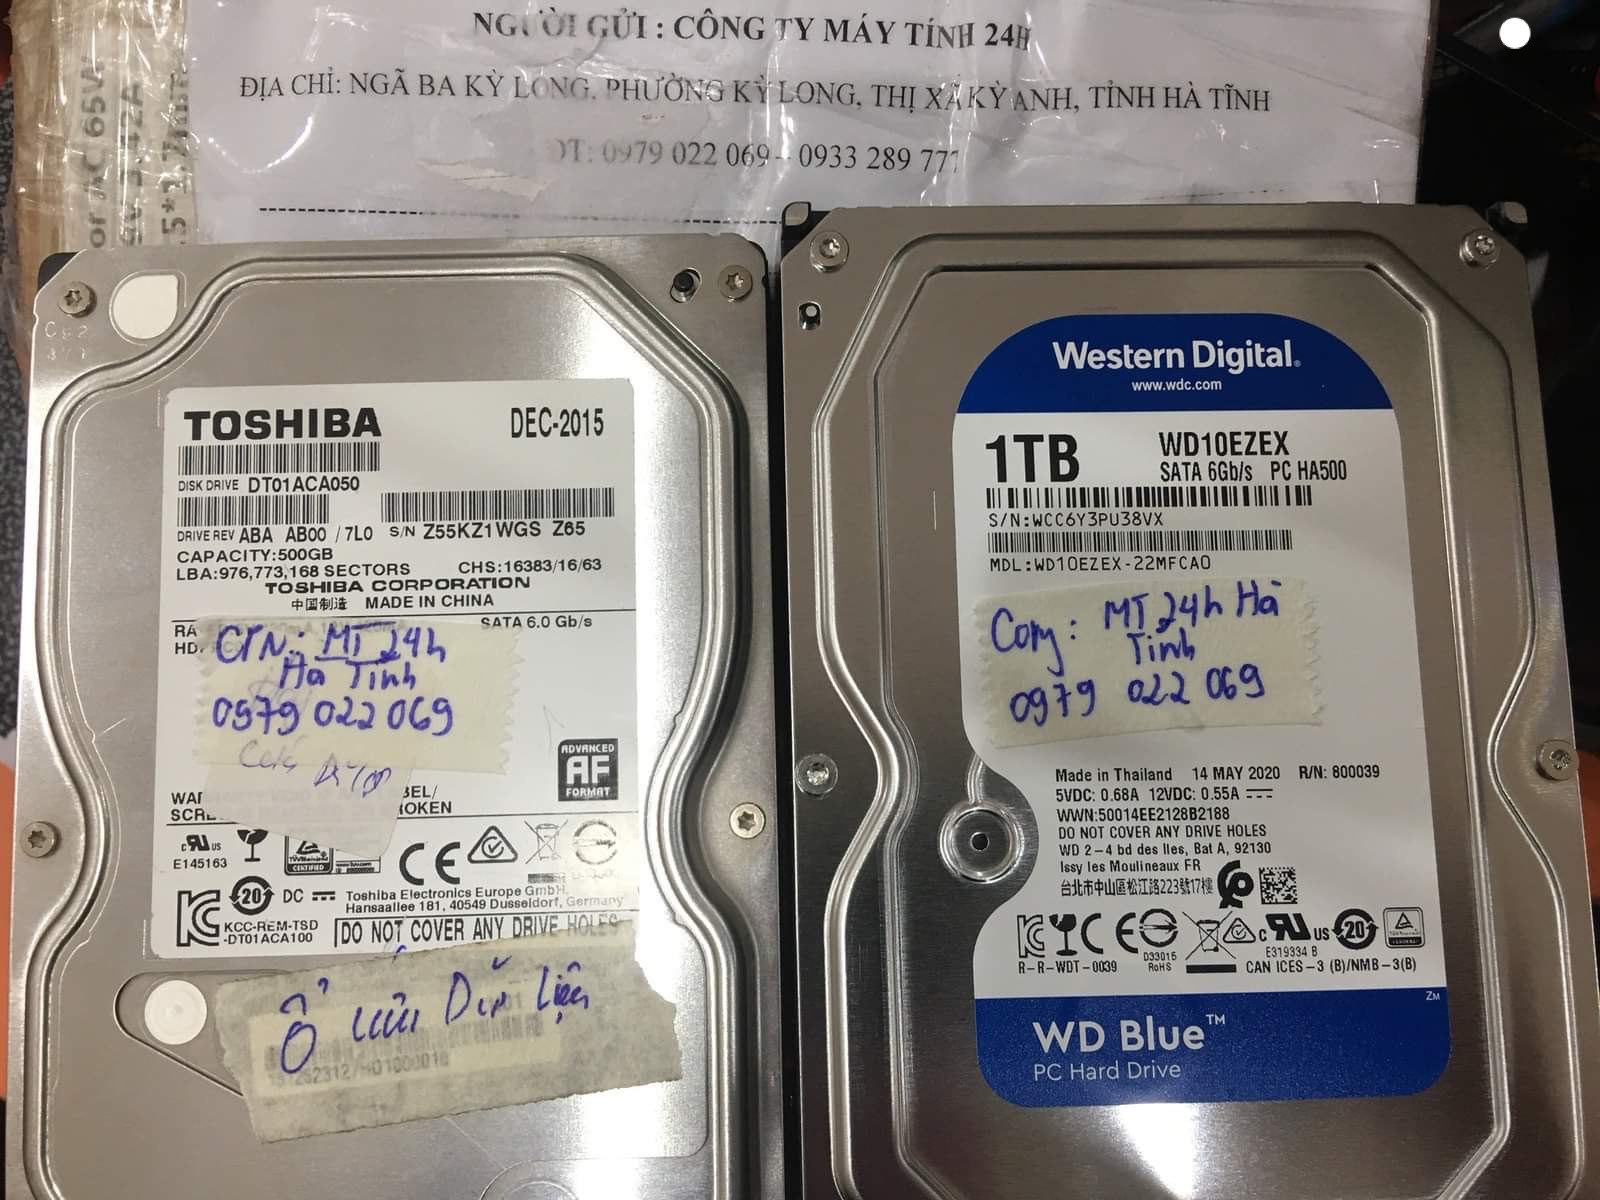 Khôi phục dữ liệu ổ cứng Toshiba 500GB lỗi đầu đọc tại Hà Tĩnh 28/08/2020